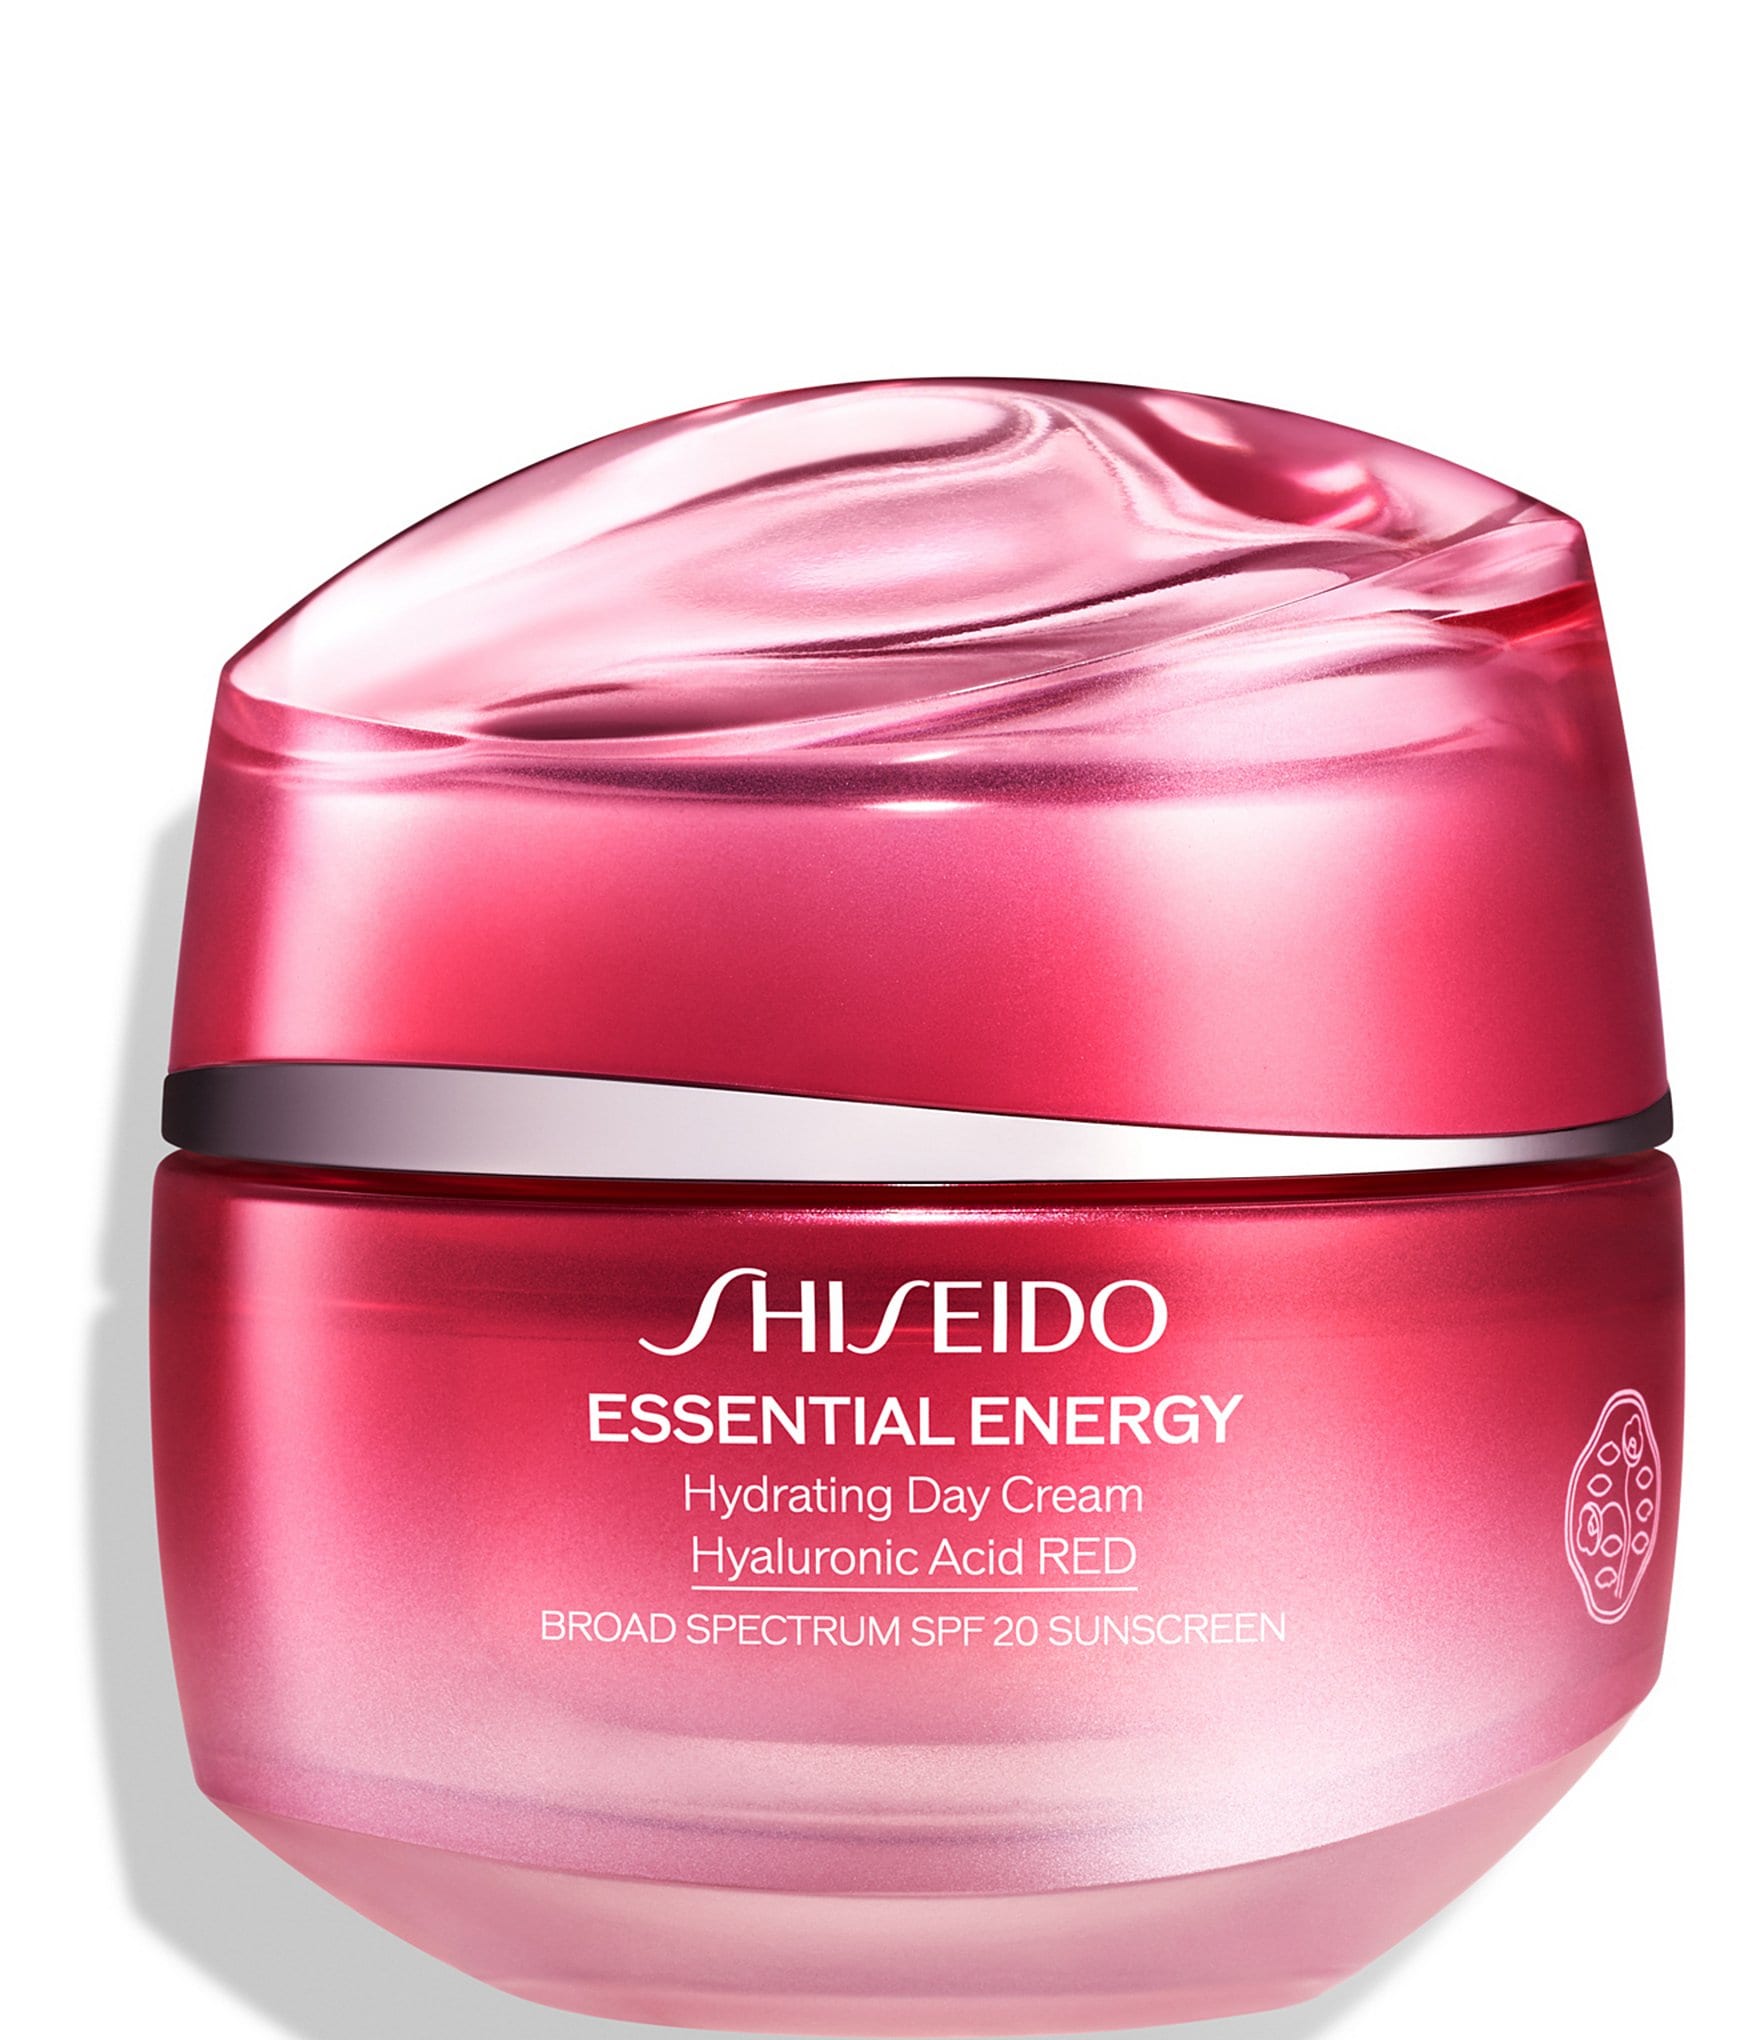 Увлажняющий дневной крем spf. Шисейдо энергетический крем. Shiseido Essential Energy набор. Shiseido spf20 крем для лица. Крем Shiseido Moisturizer легкий.